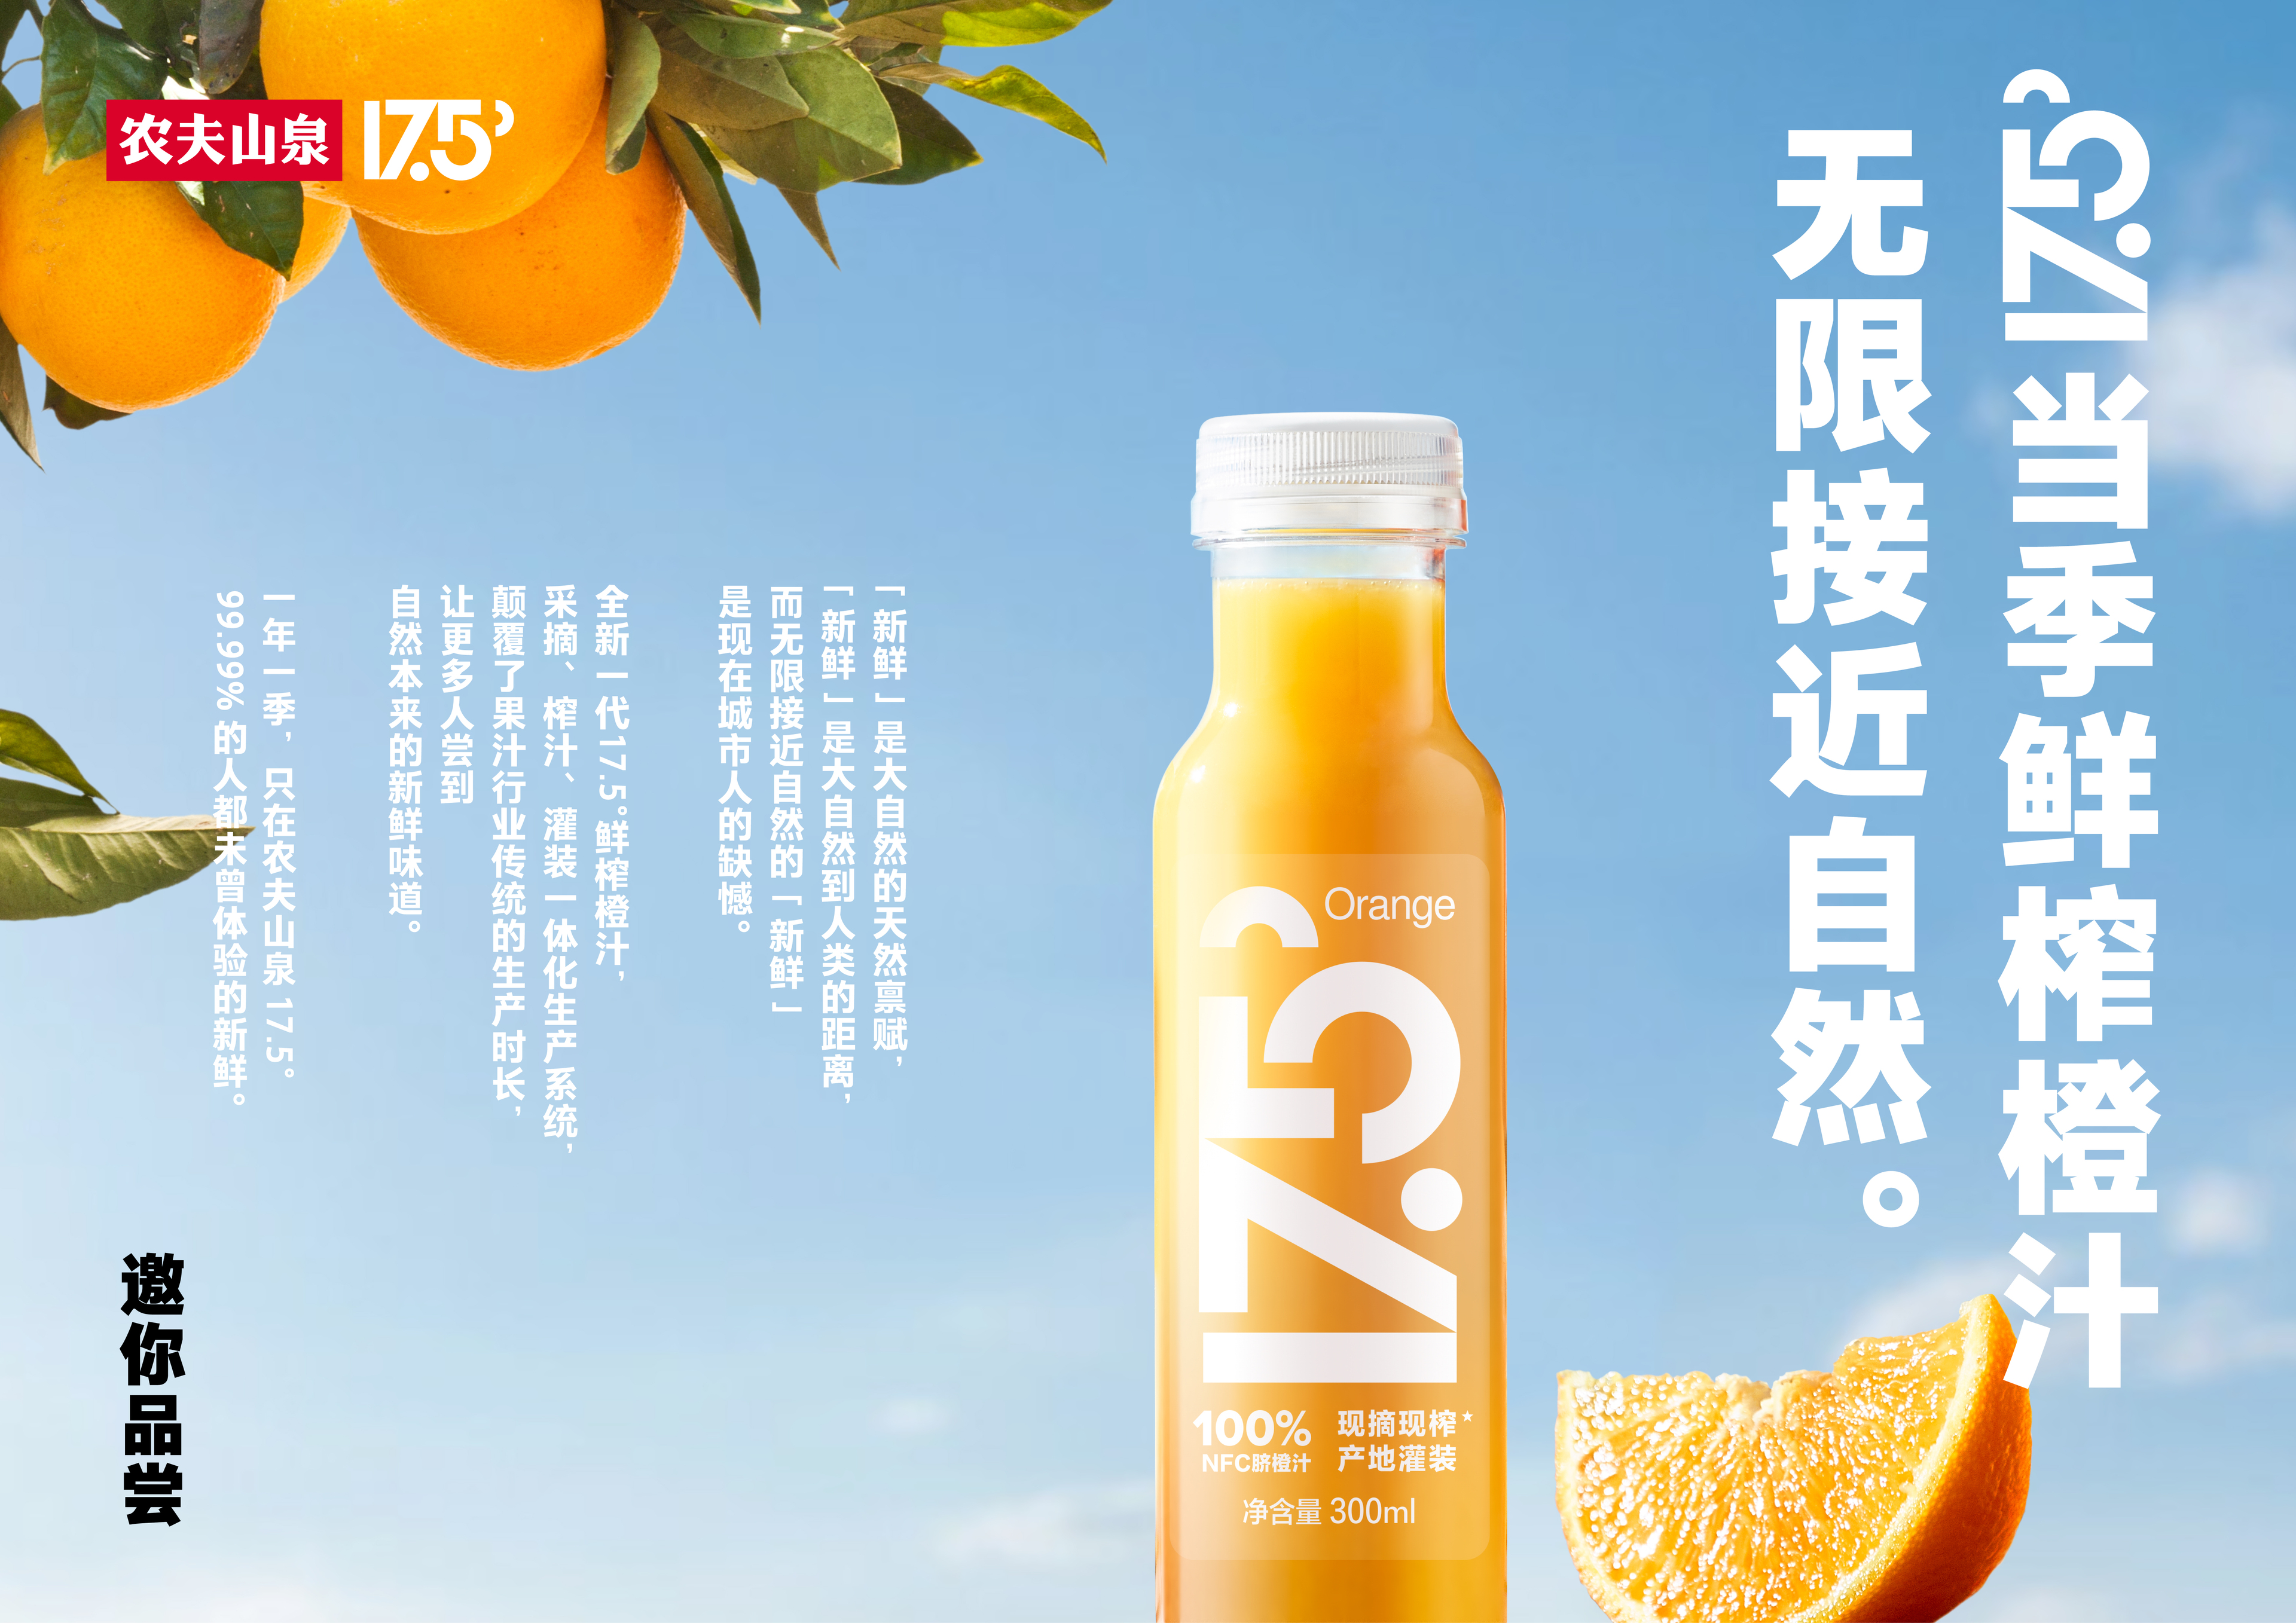 新鲜是人类和自然的距离 农夫山泉推出当季鲜榨橙汁17.5° 挑战味觉极限